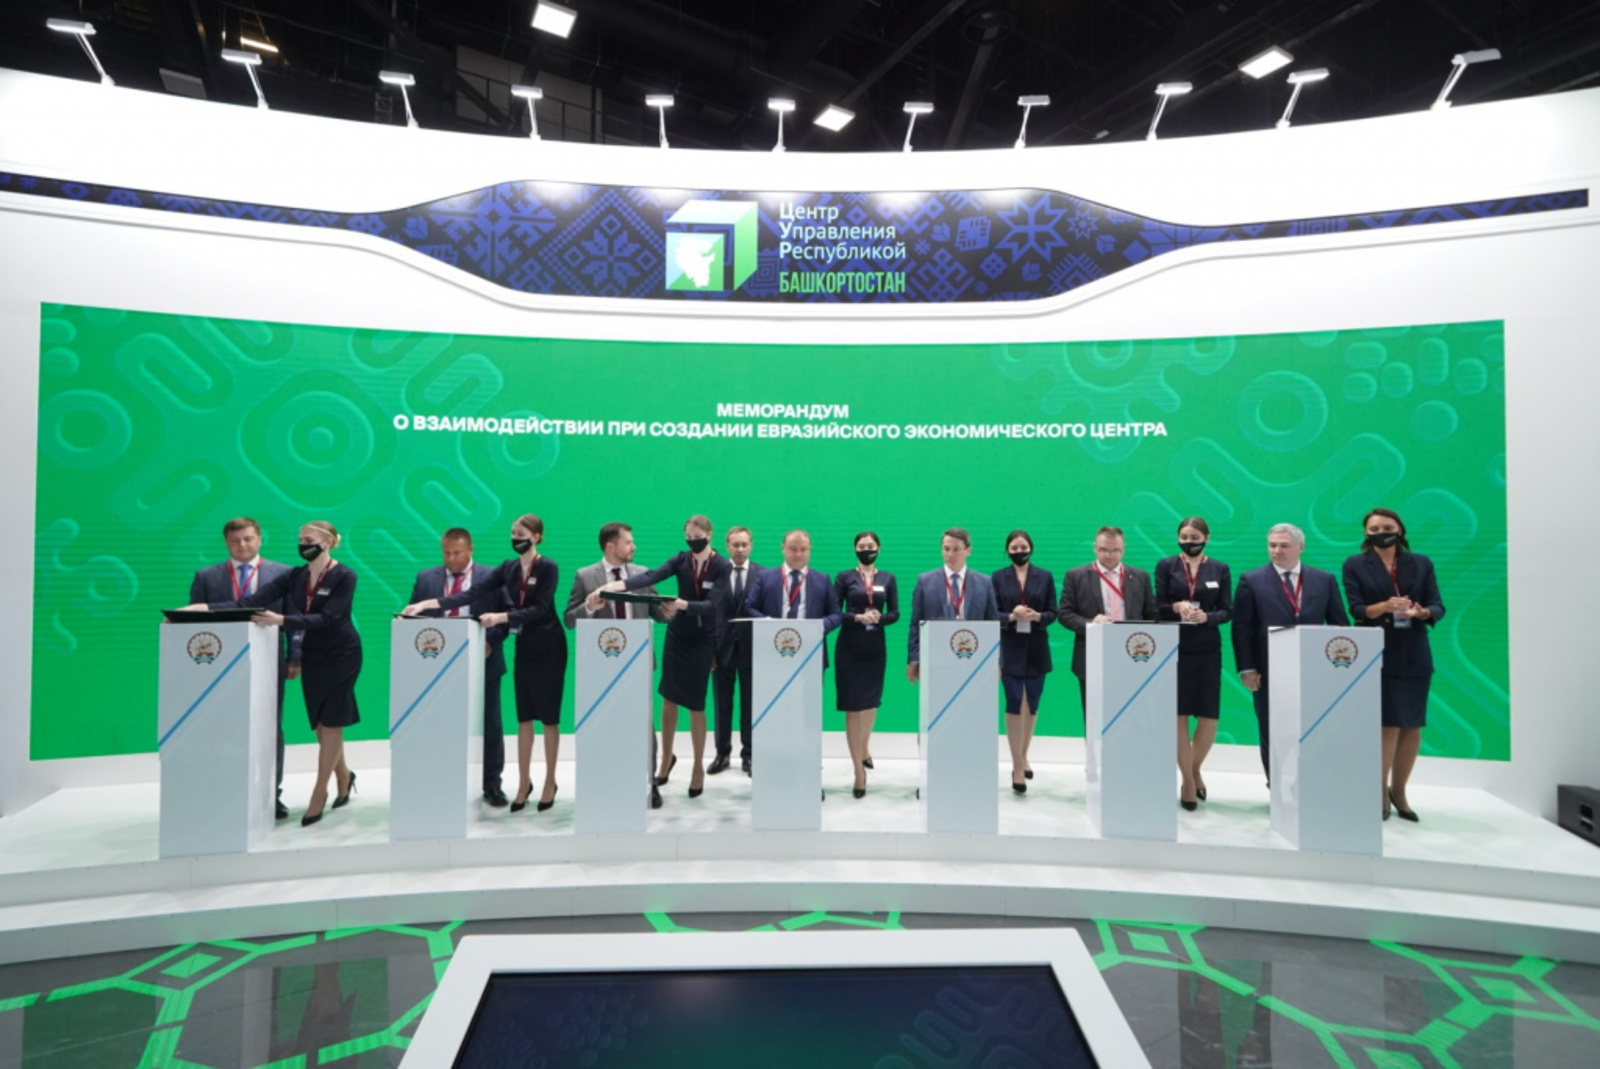 ПМЭФ-2022: Башкортостан и 6 регионов России подписали меморандум по созданию Евразийского экономического центра